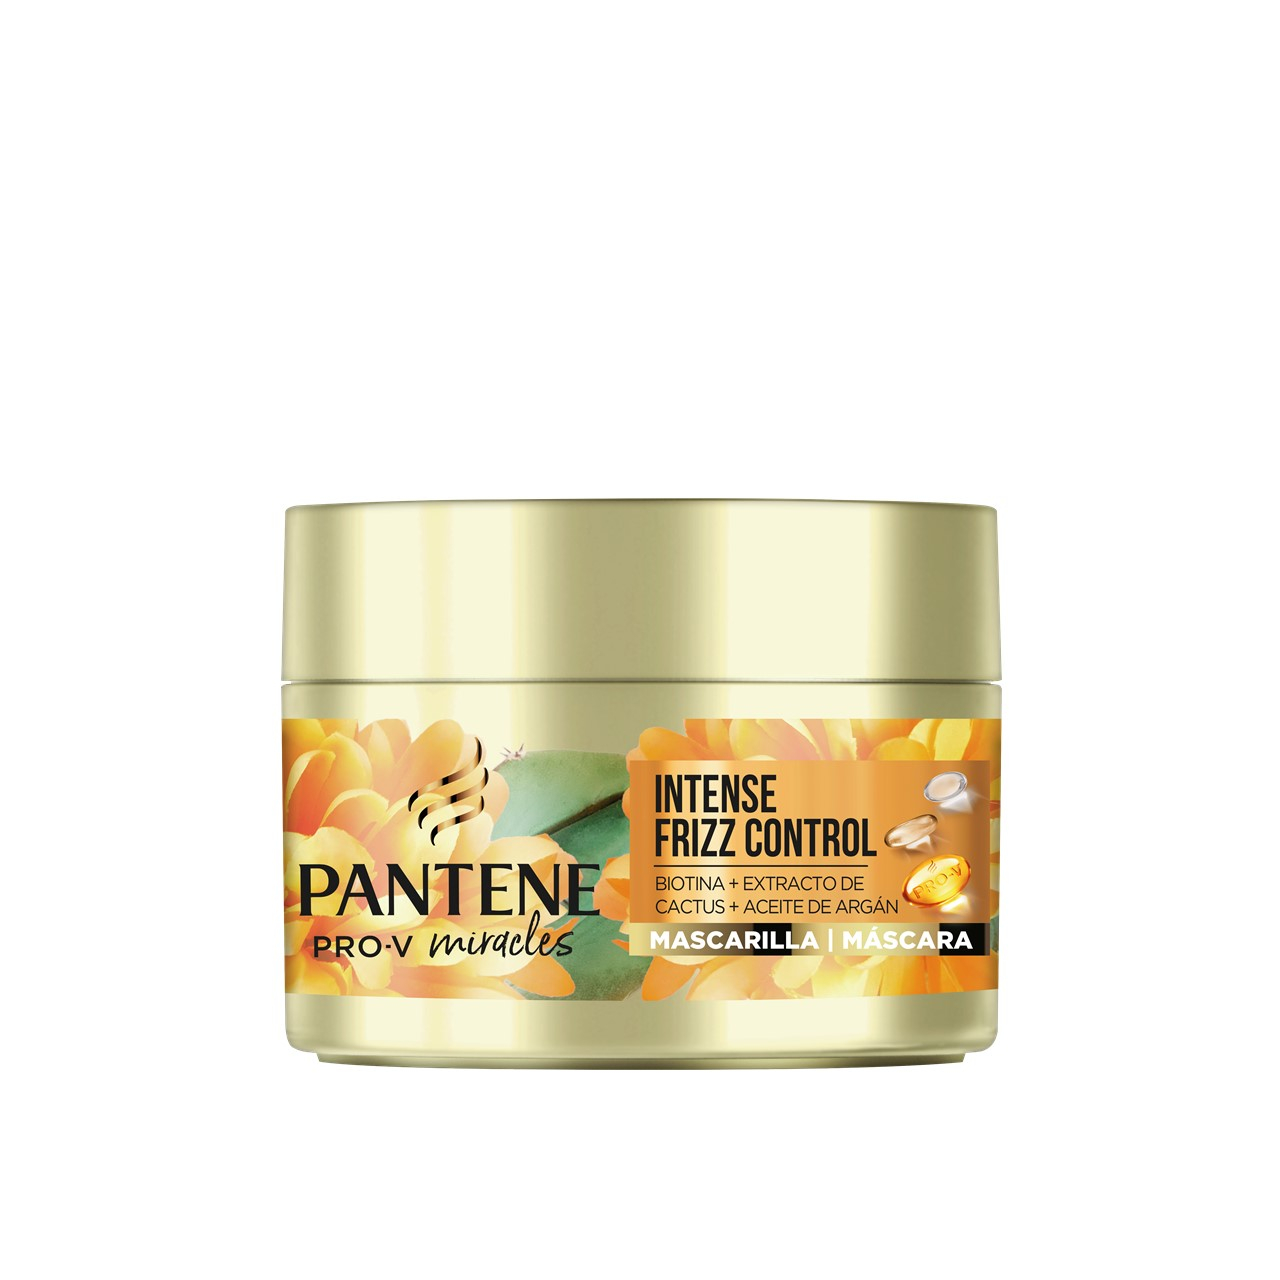 Pantene Pro-V Miracles Intense Frizz Control Hair Mask 160ml (5.41fl oz)